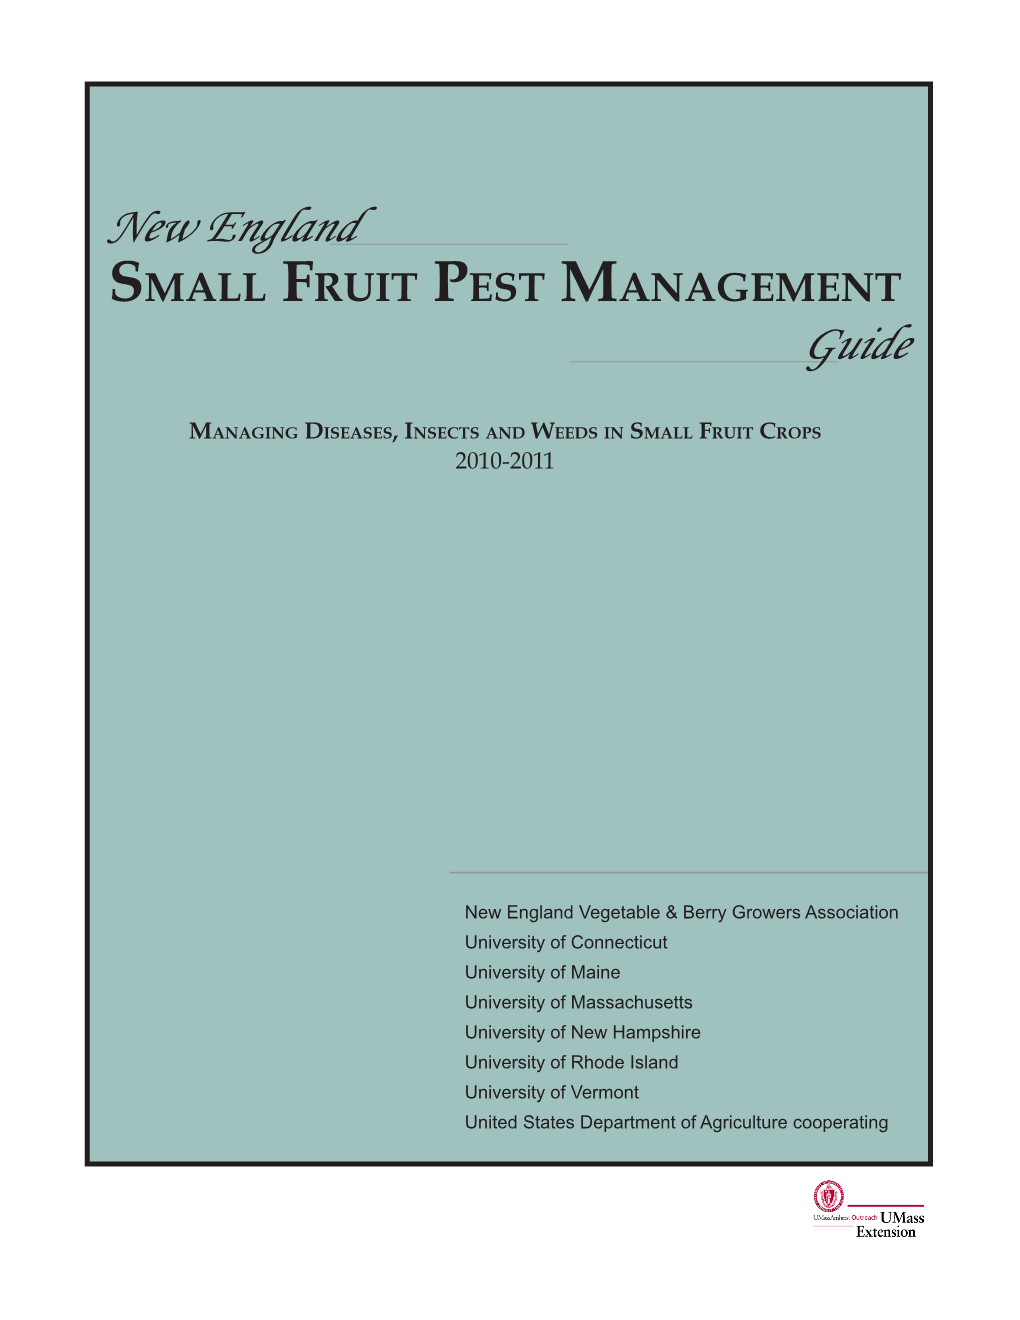 NE Small Fruit Guide